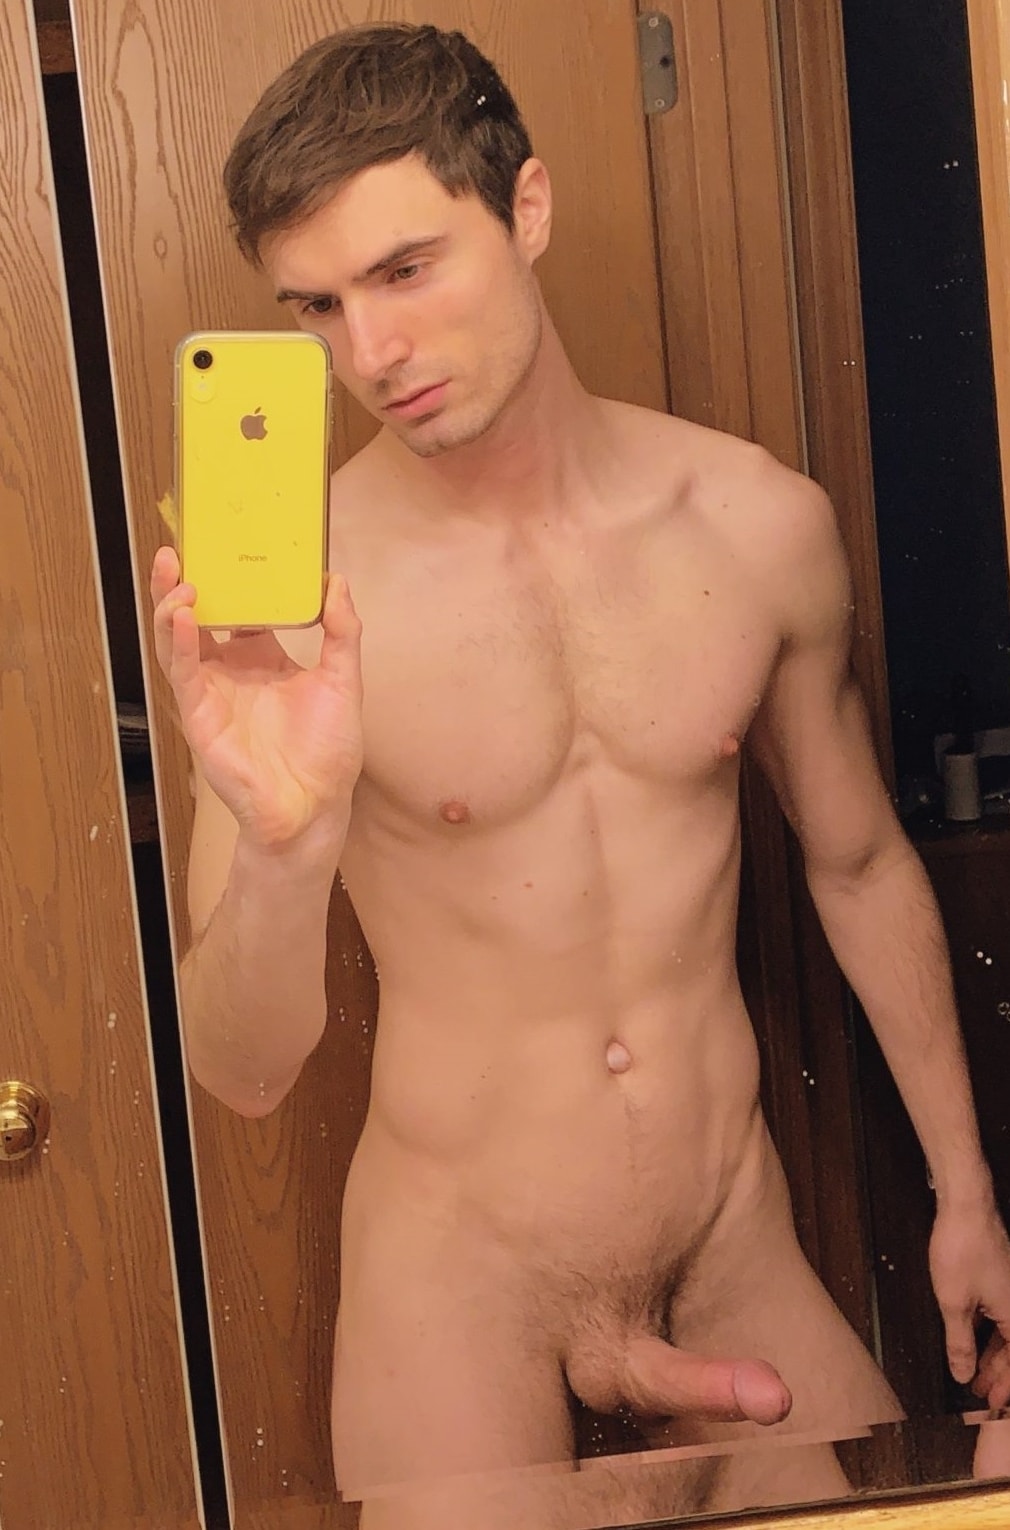 Naked guy selfies